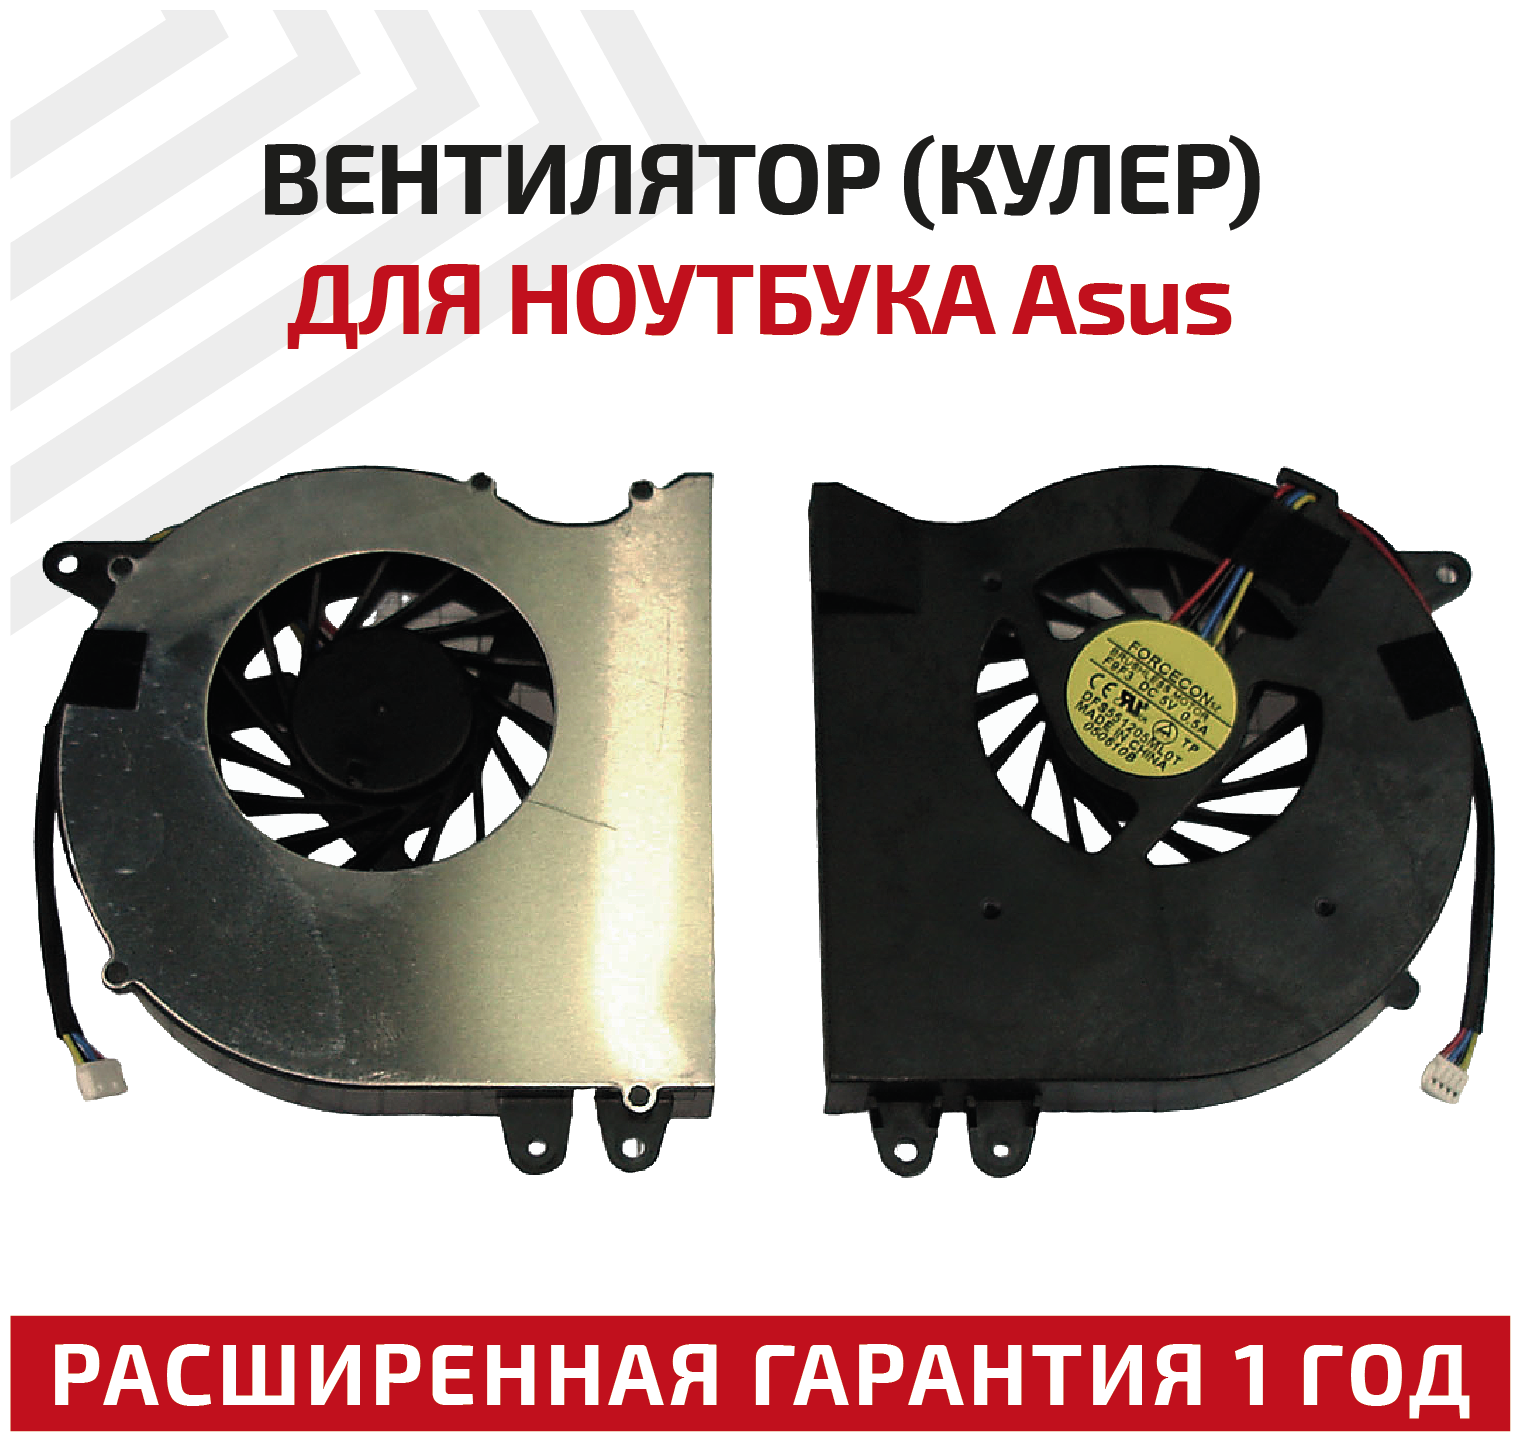 Вентилятор (кулер) для ноутбука Asus N71, N71J, N71JA, X77J, X77JA, 4-pin